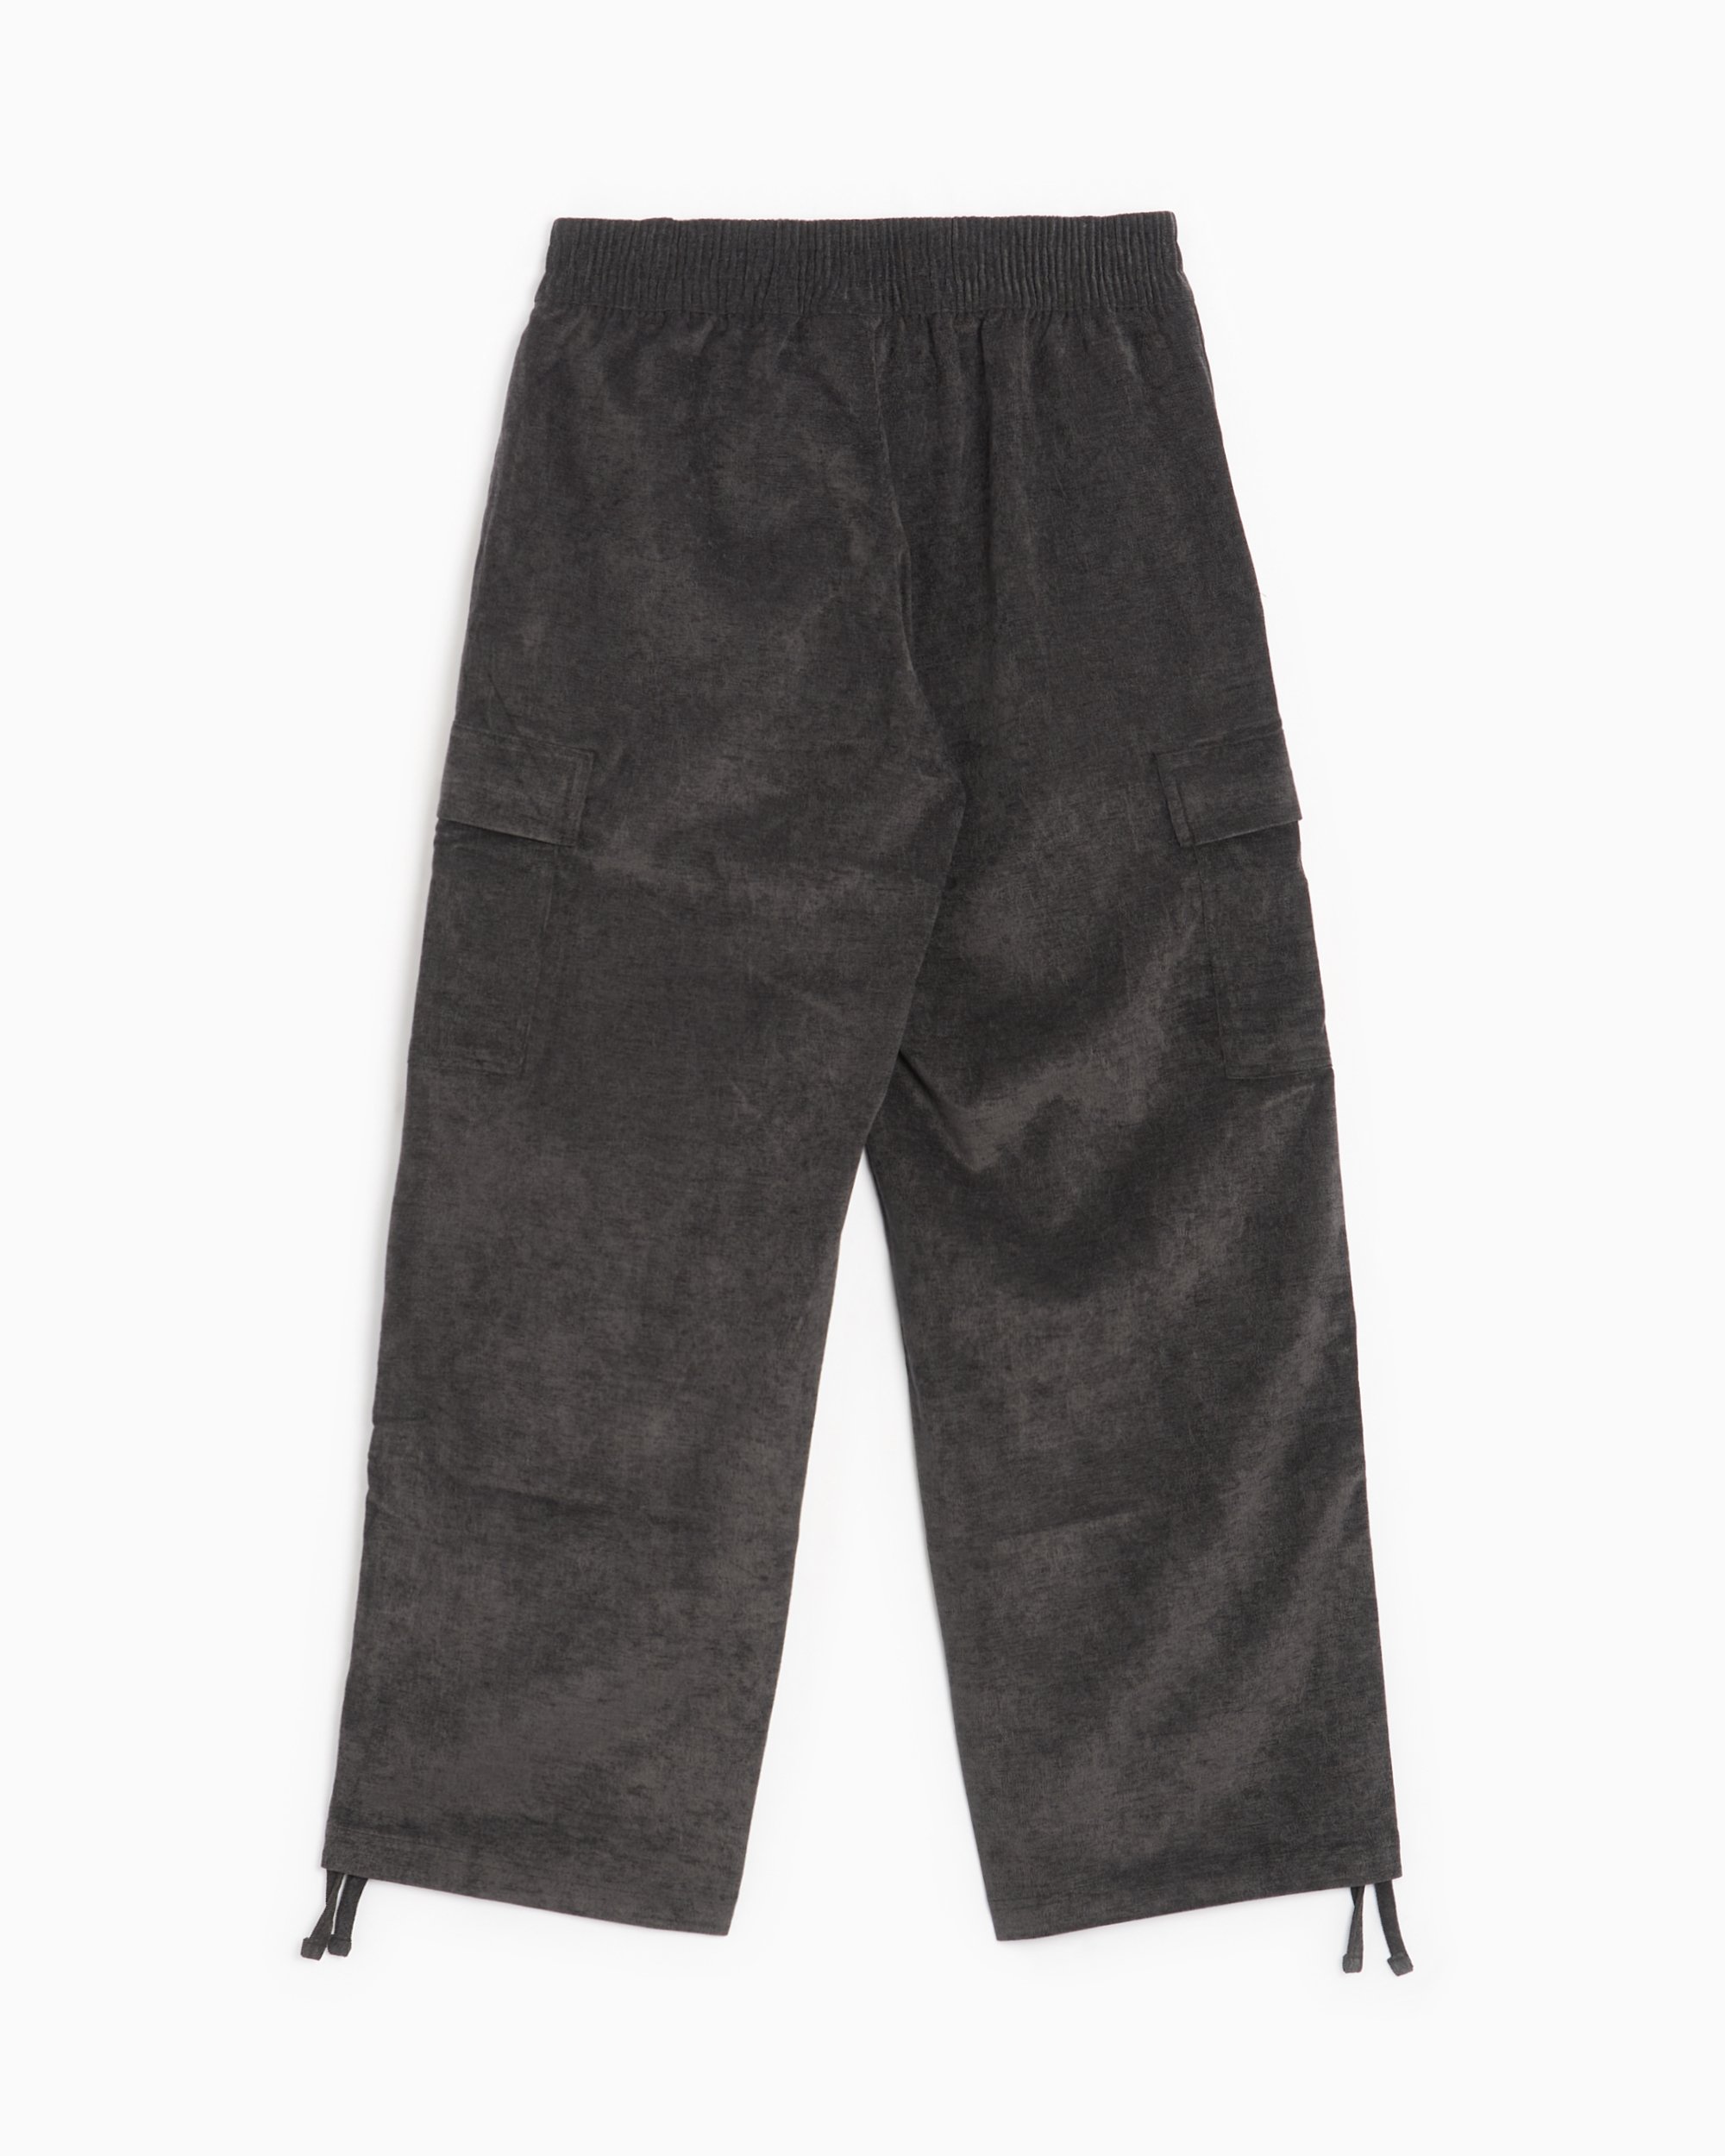 Jordan Chicago Women's Corduroy Pants Gray FD8209-010| Buy Online